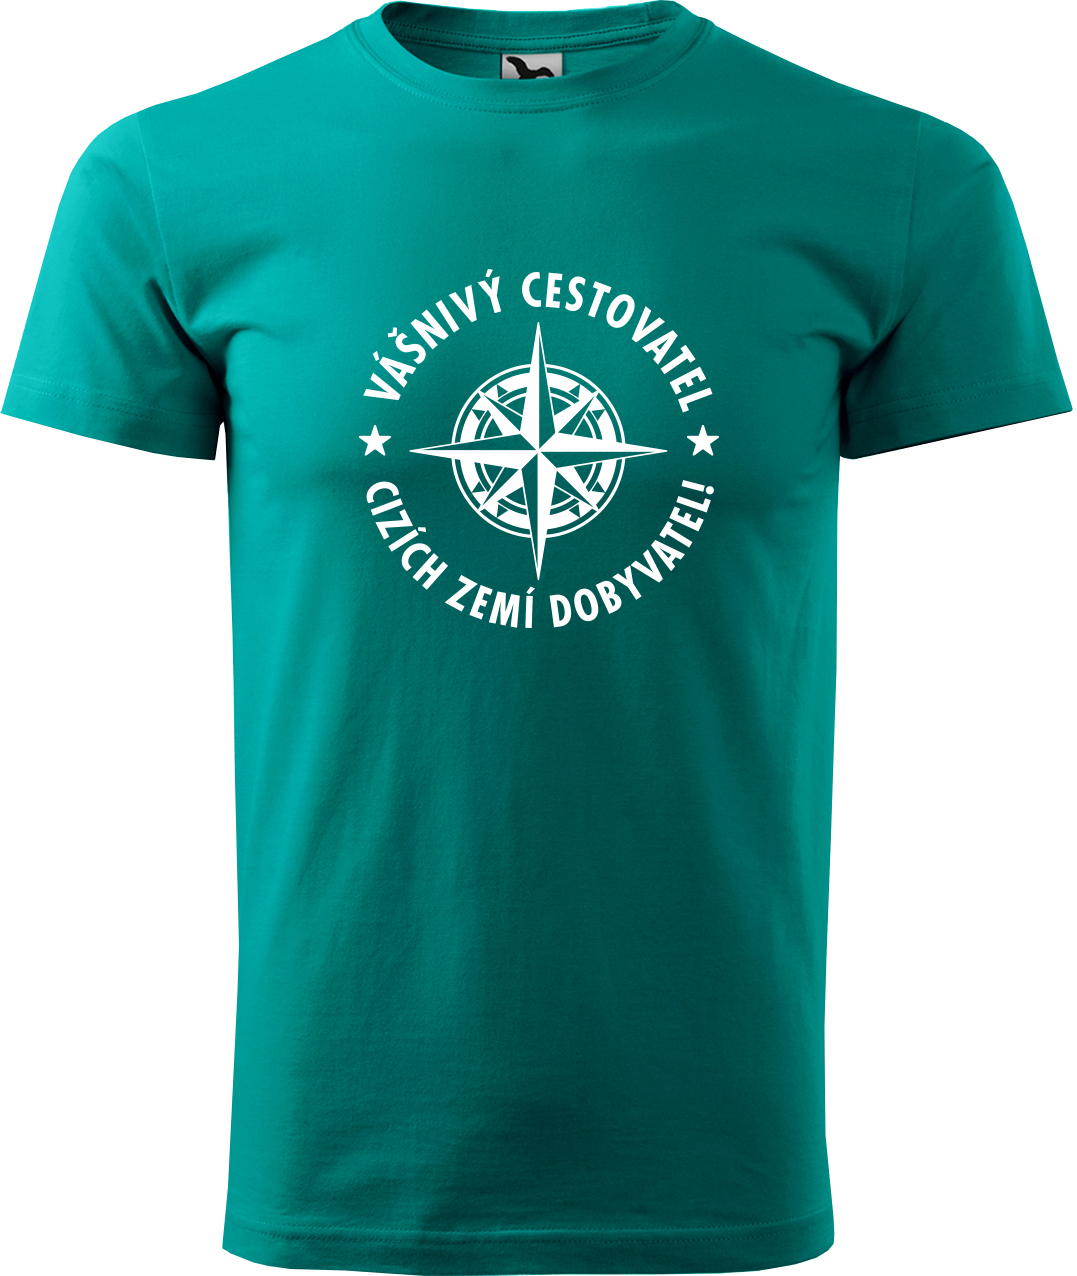 Pánské cestovatelské tričko - Vášnivý cestovatel, cizích zemí dobyvatel Velikost: S, Barva: Emerald (19), Střih: pánský